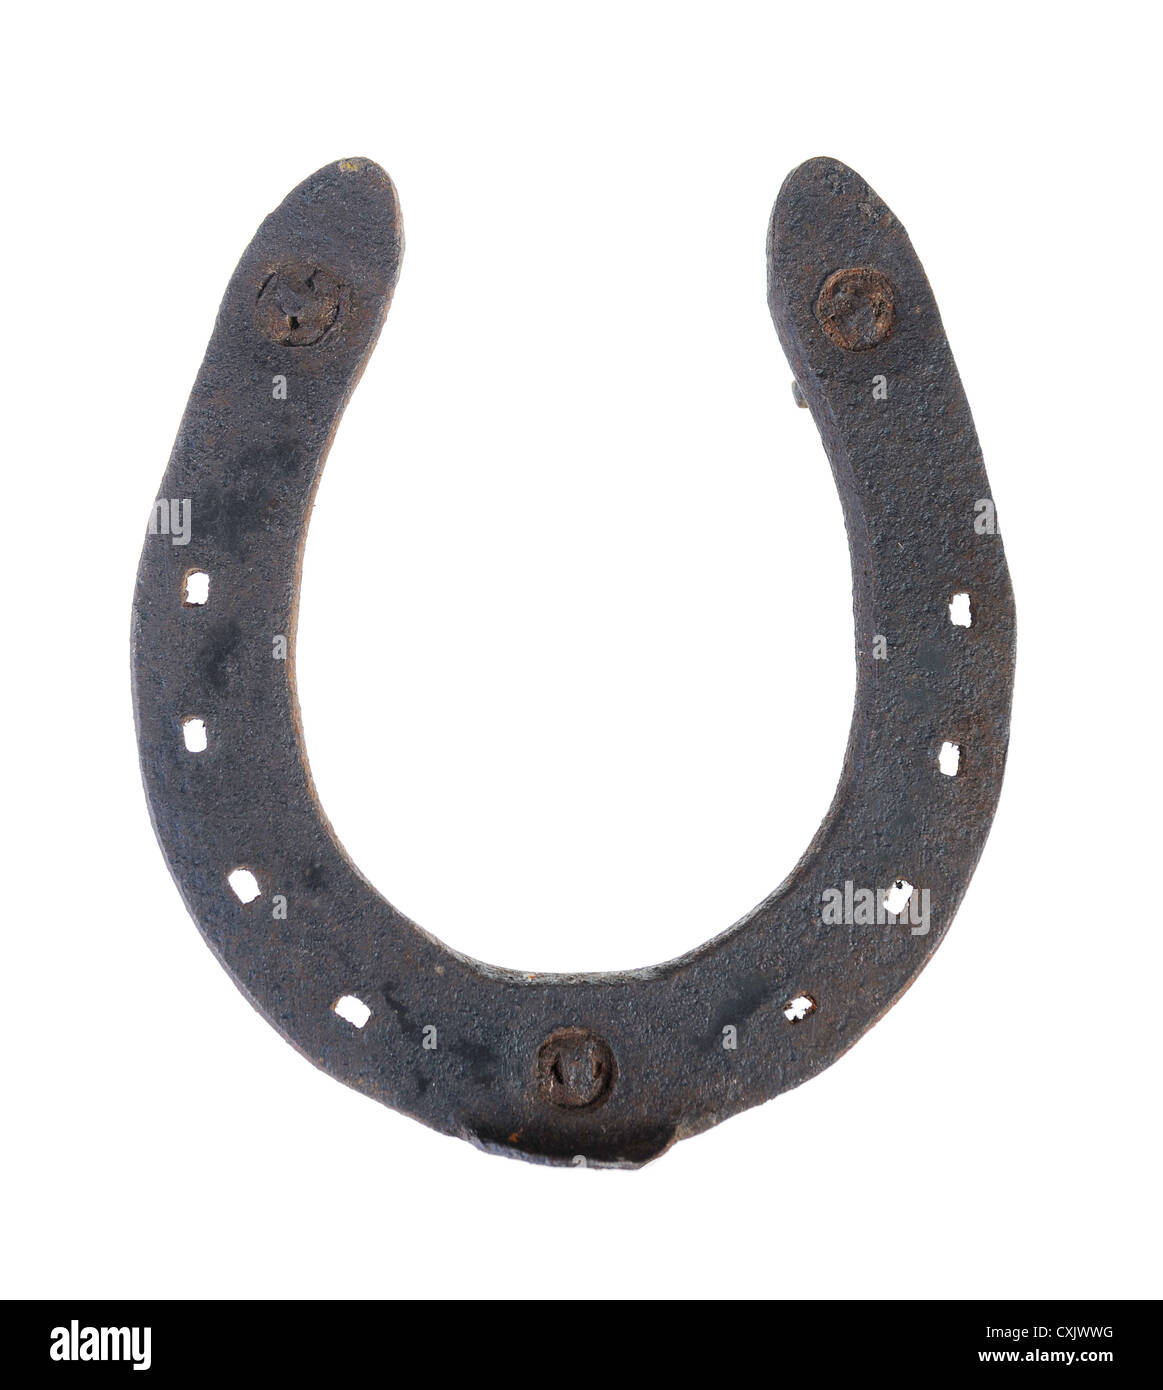 Old horseshoe Stock Photo